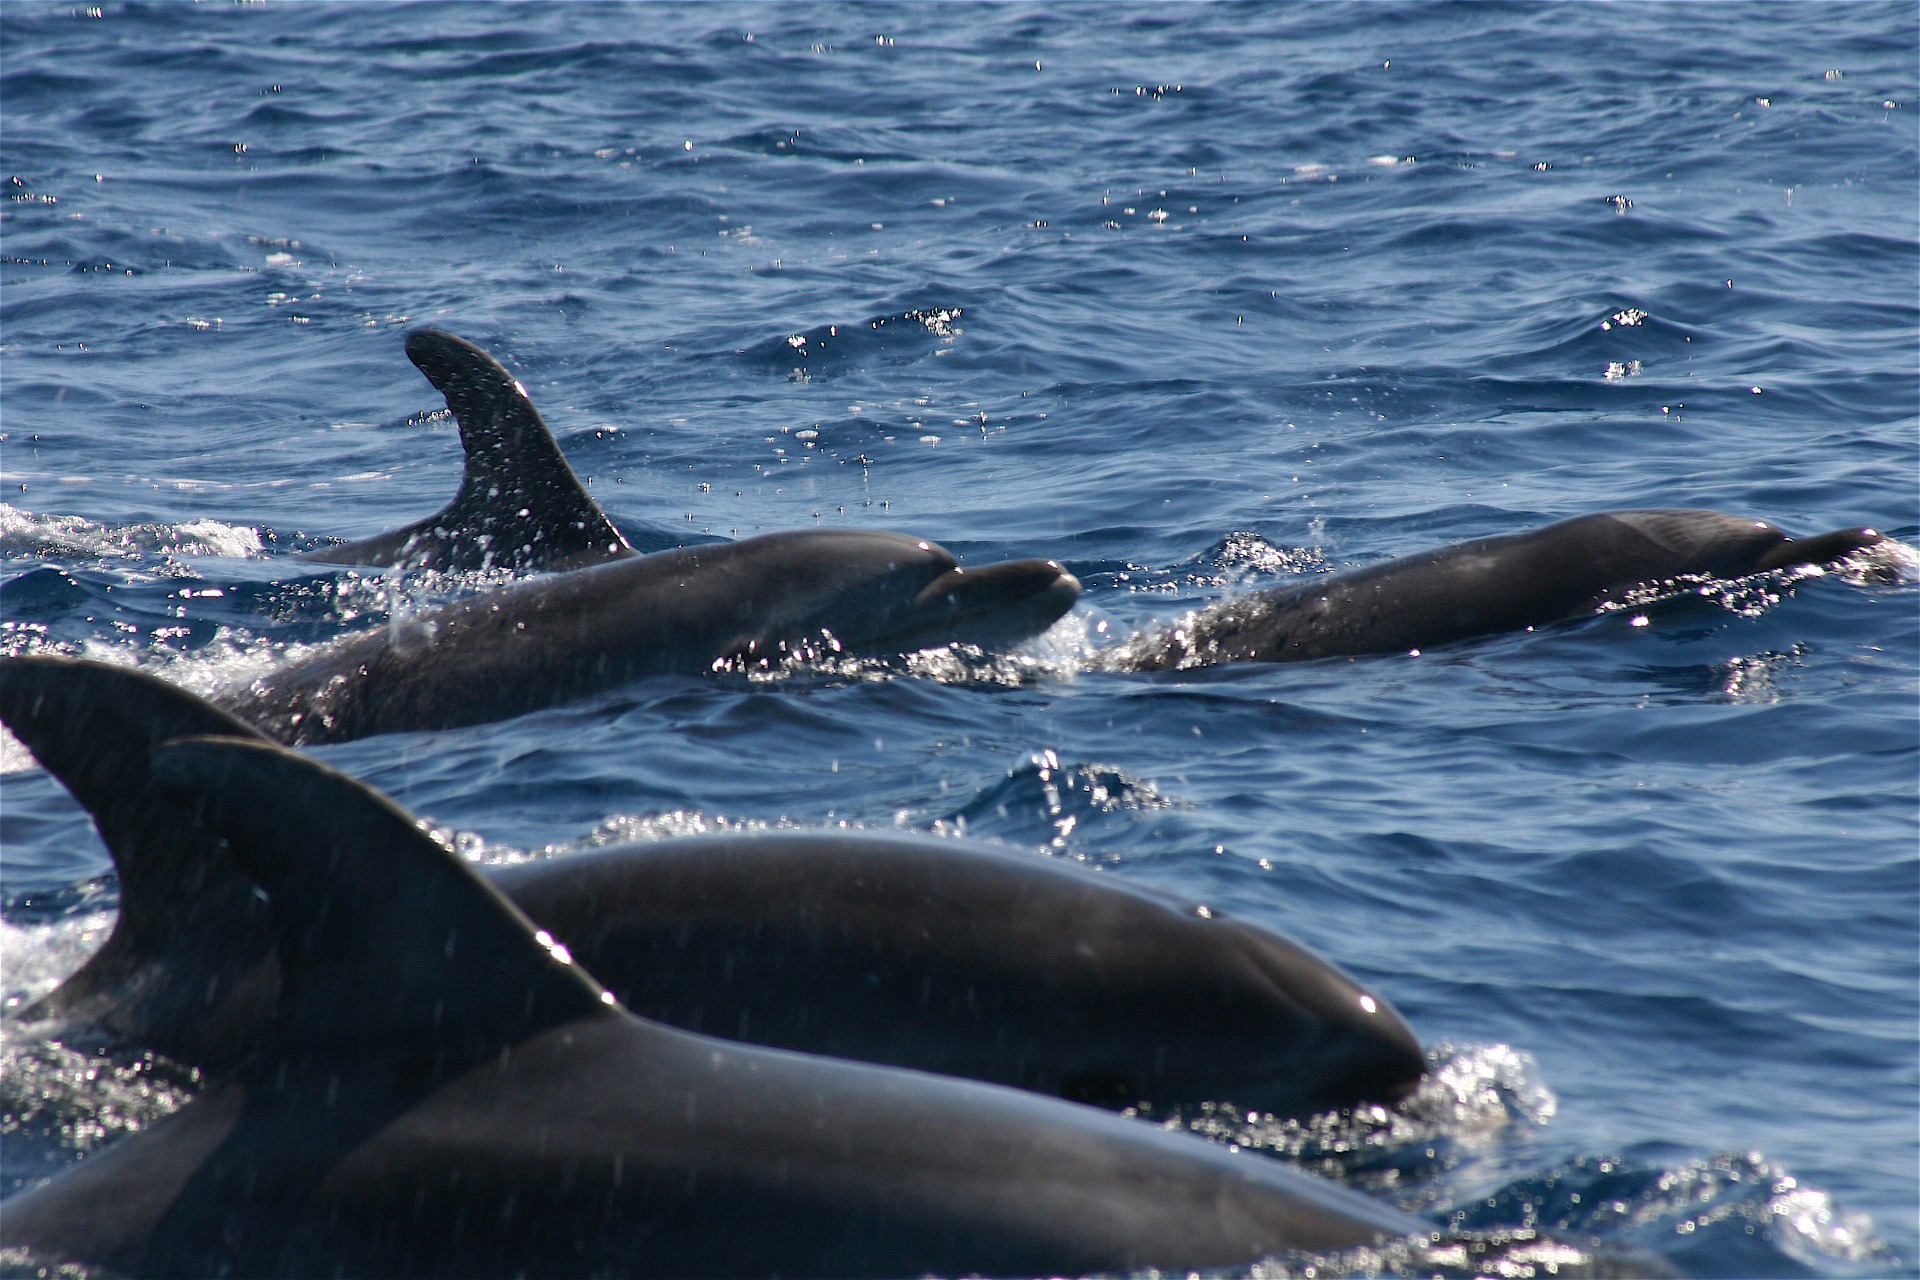  Varios delfines nadando en el mar